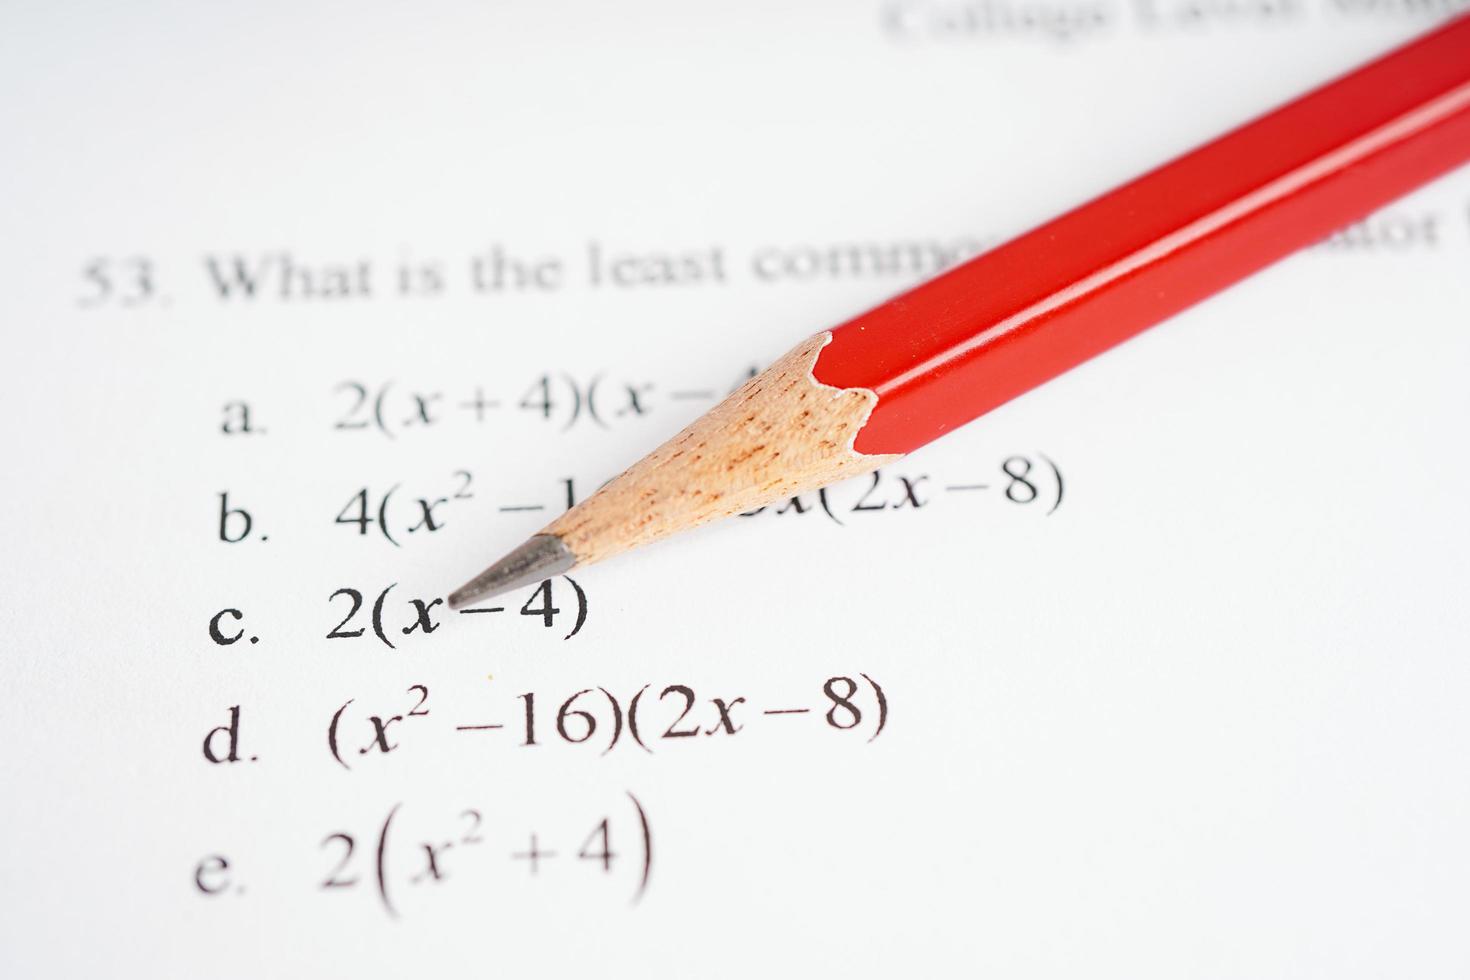 lápiz sobre papel de prueba de ejercicio de fórmula matemática en la escuela de educación. foto